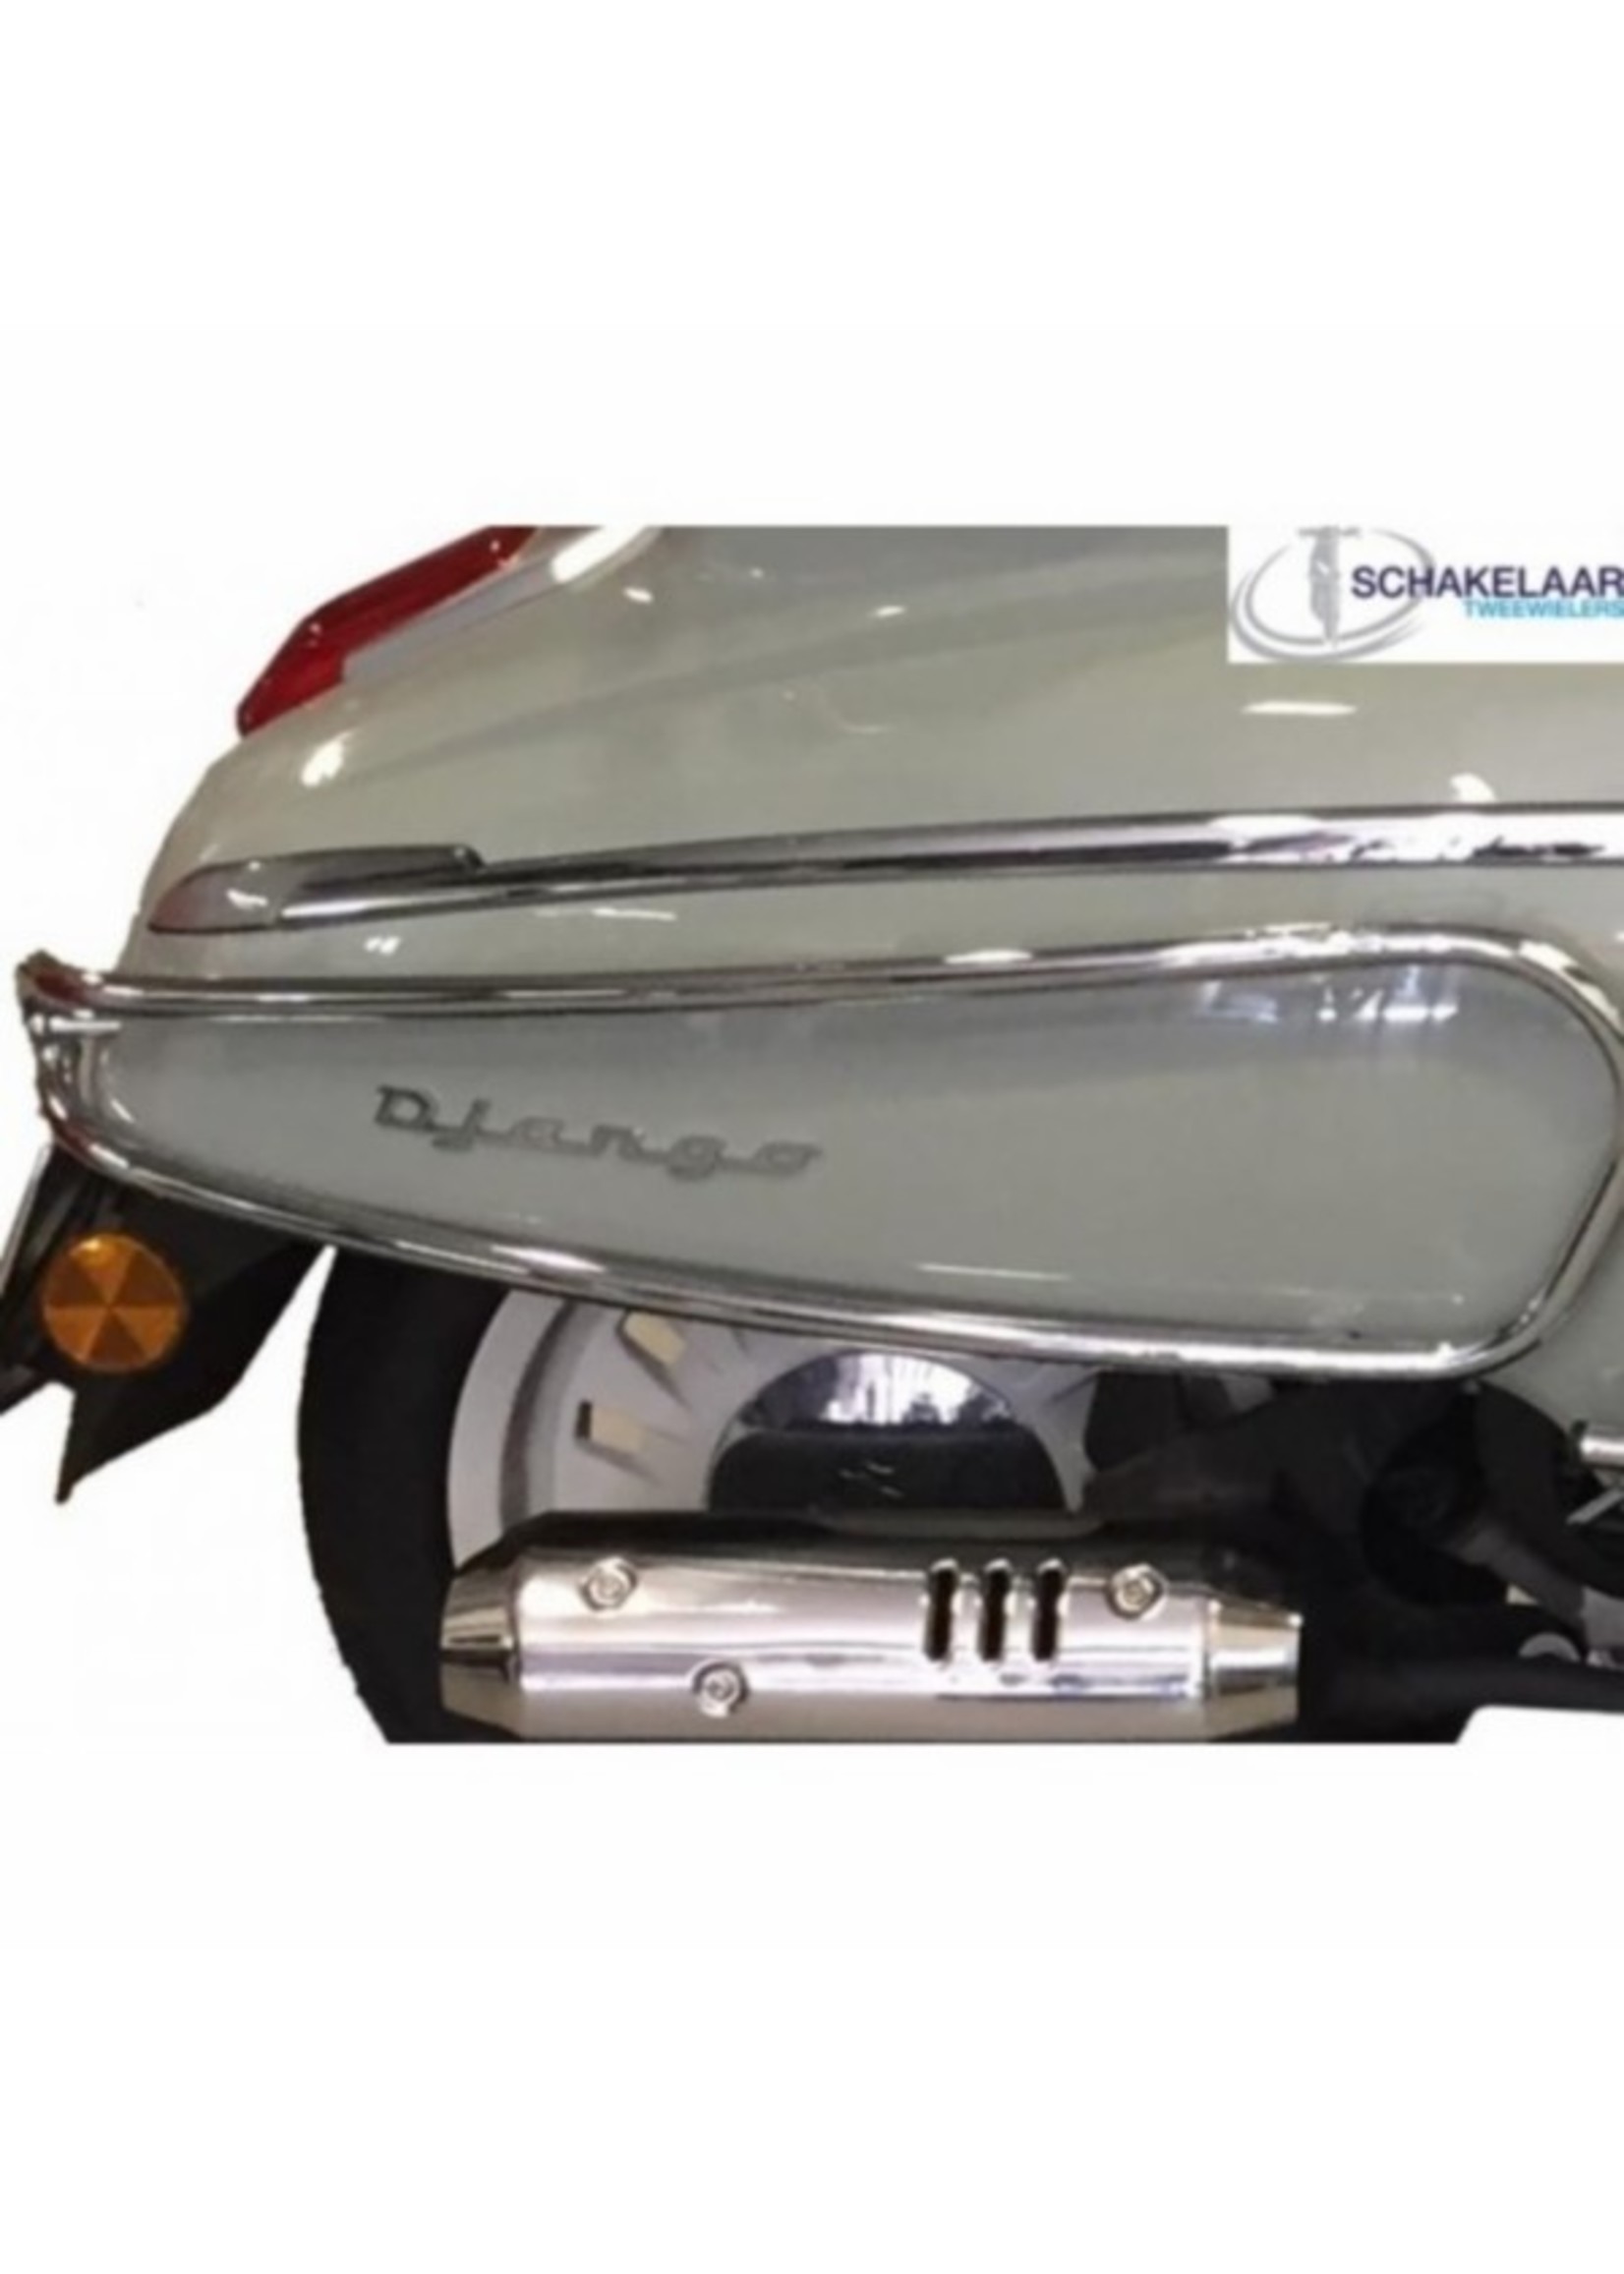 Peugeot sierbeugel set achterzijde django chroom orig pg840-dja-crm